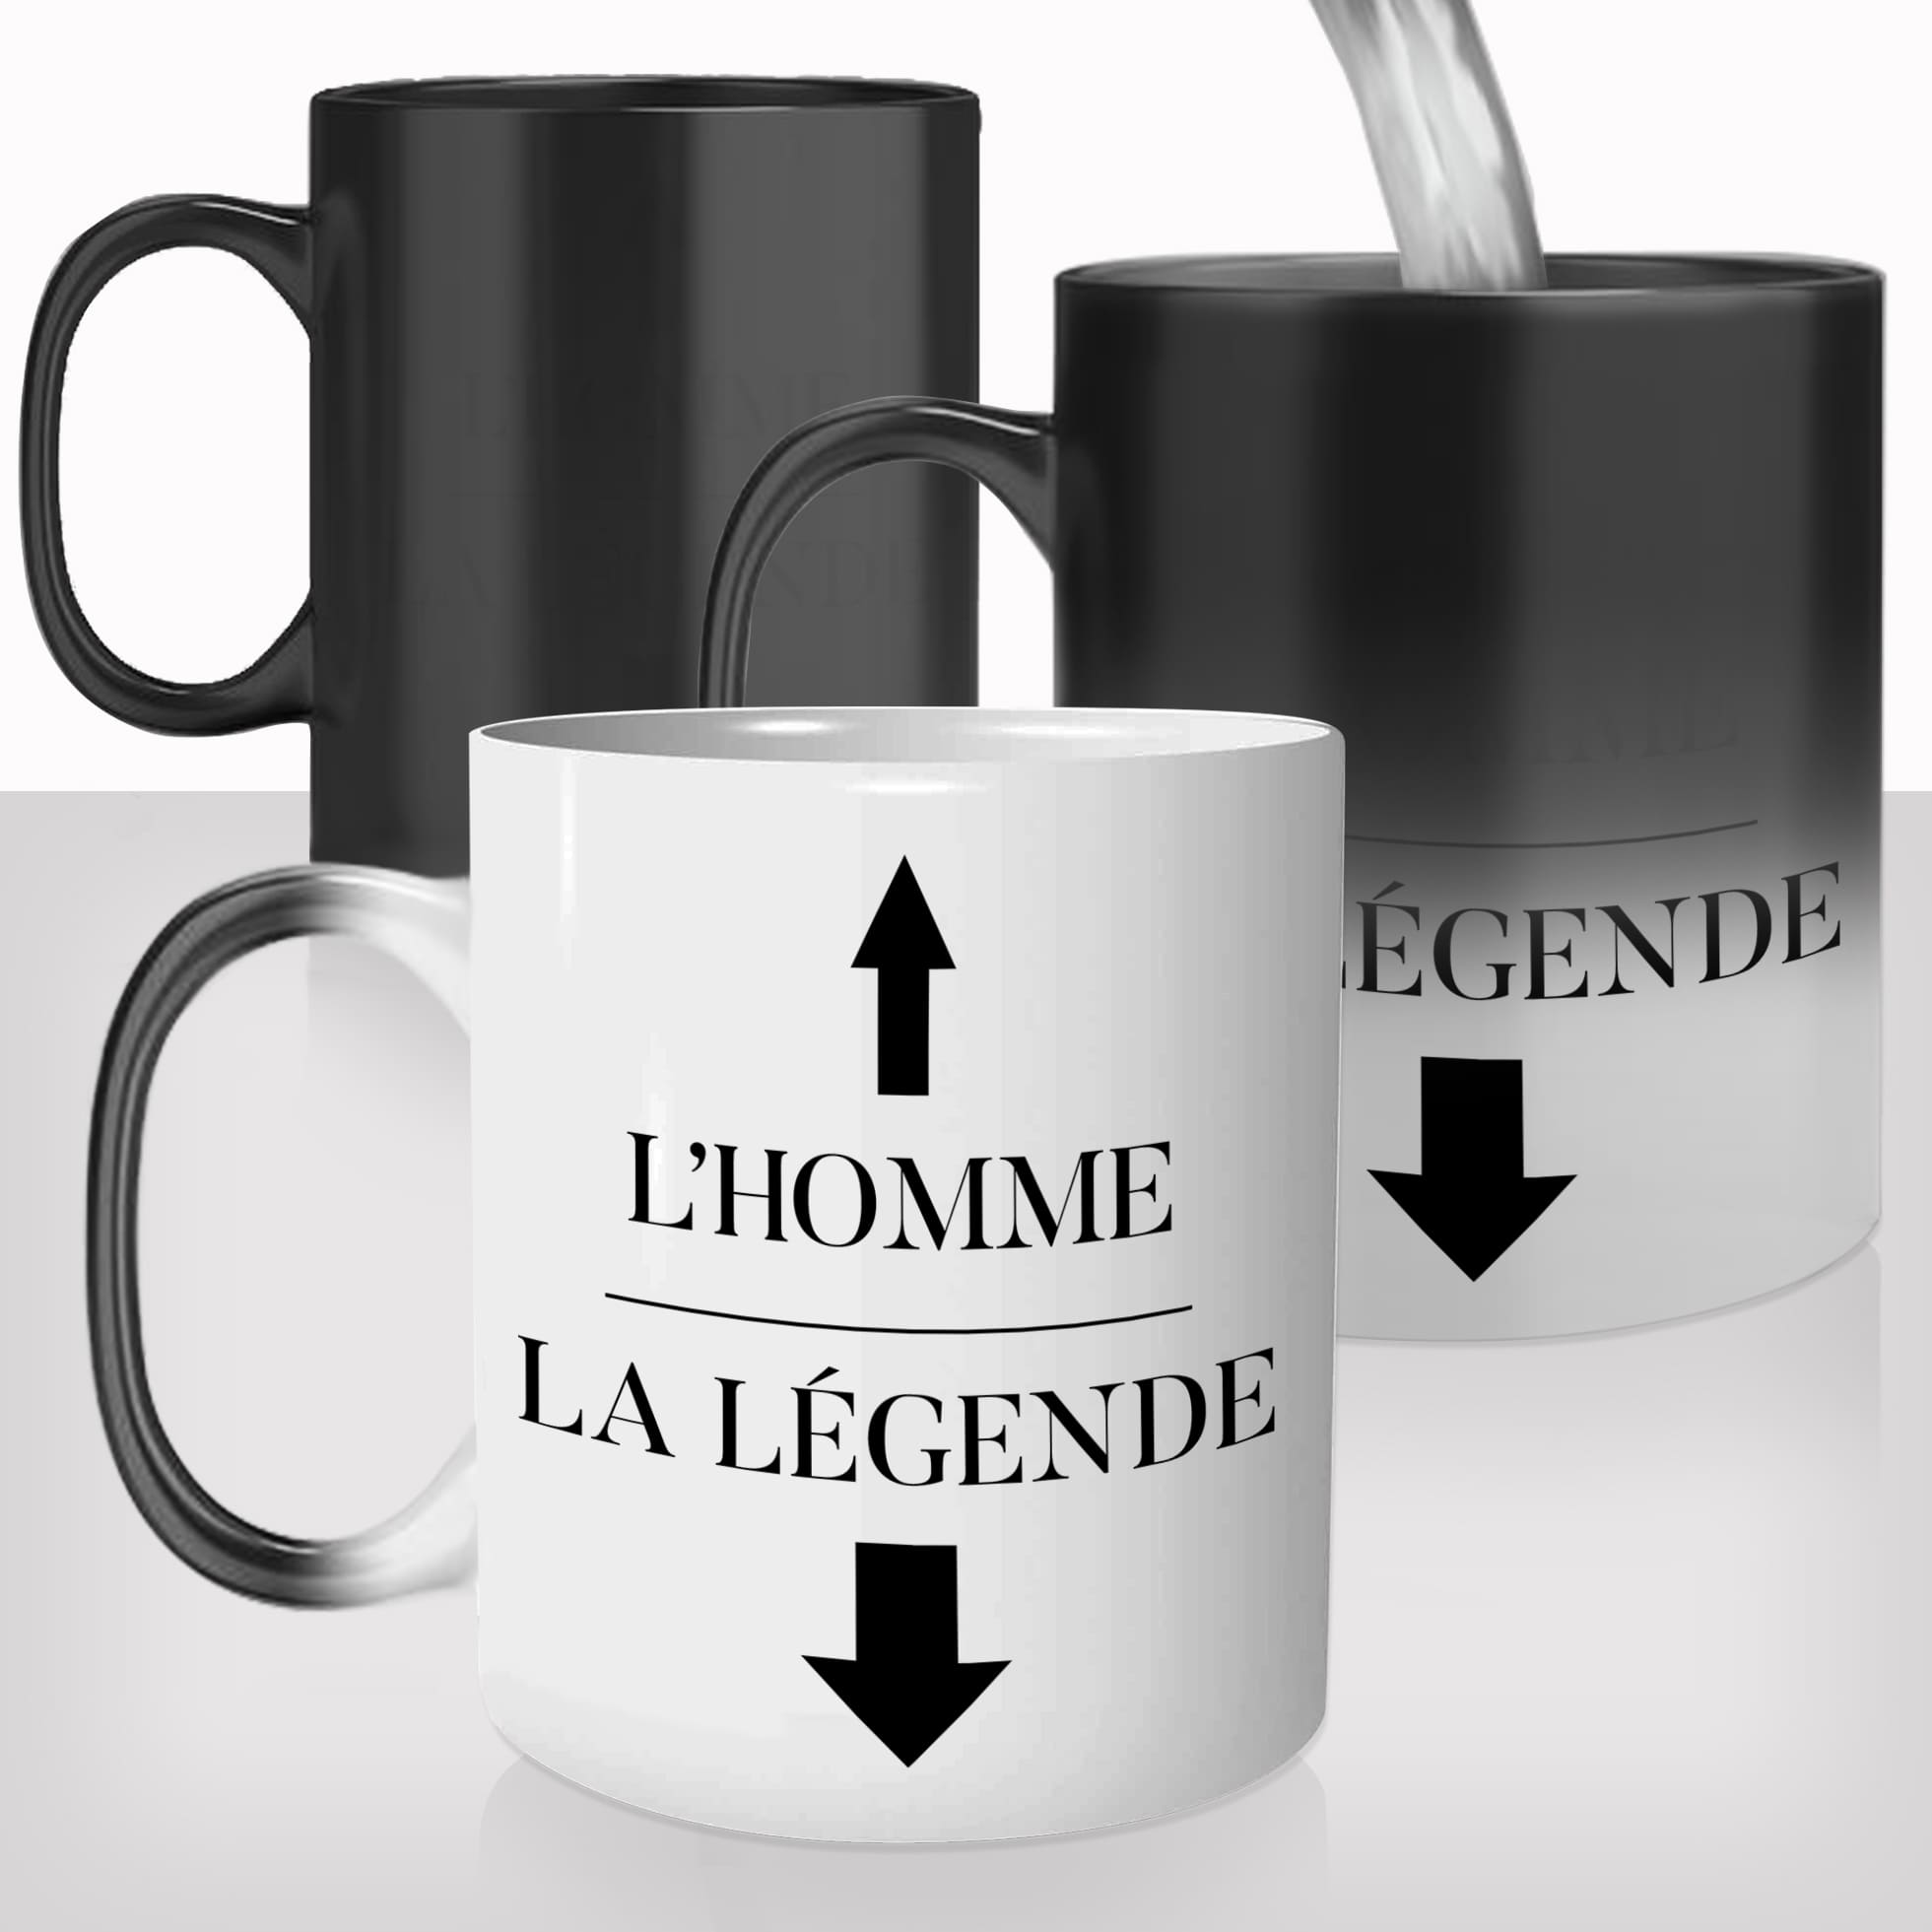 mug-tasse-magique-thermique-thermoreactif-personnalisé-personnalisable-l'homme-la-légende-gros-zizi-penis-drole-idée-cadeau-original-café-thé